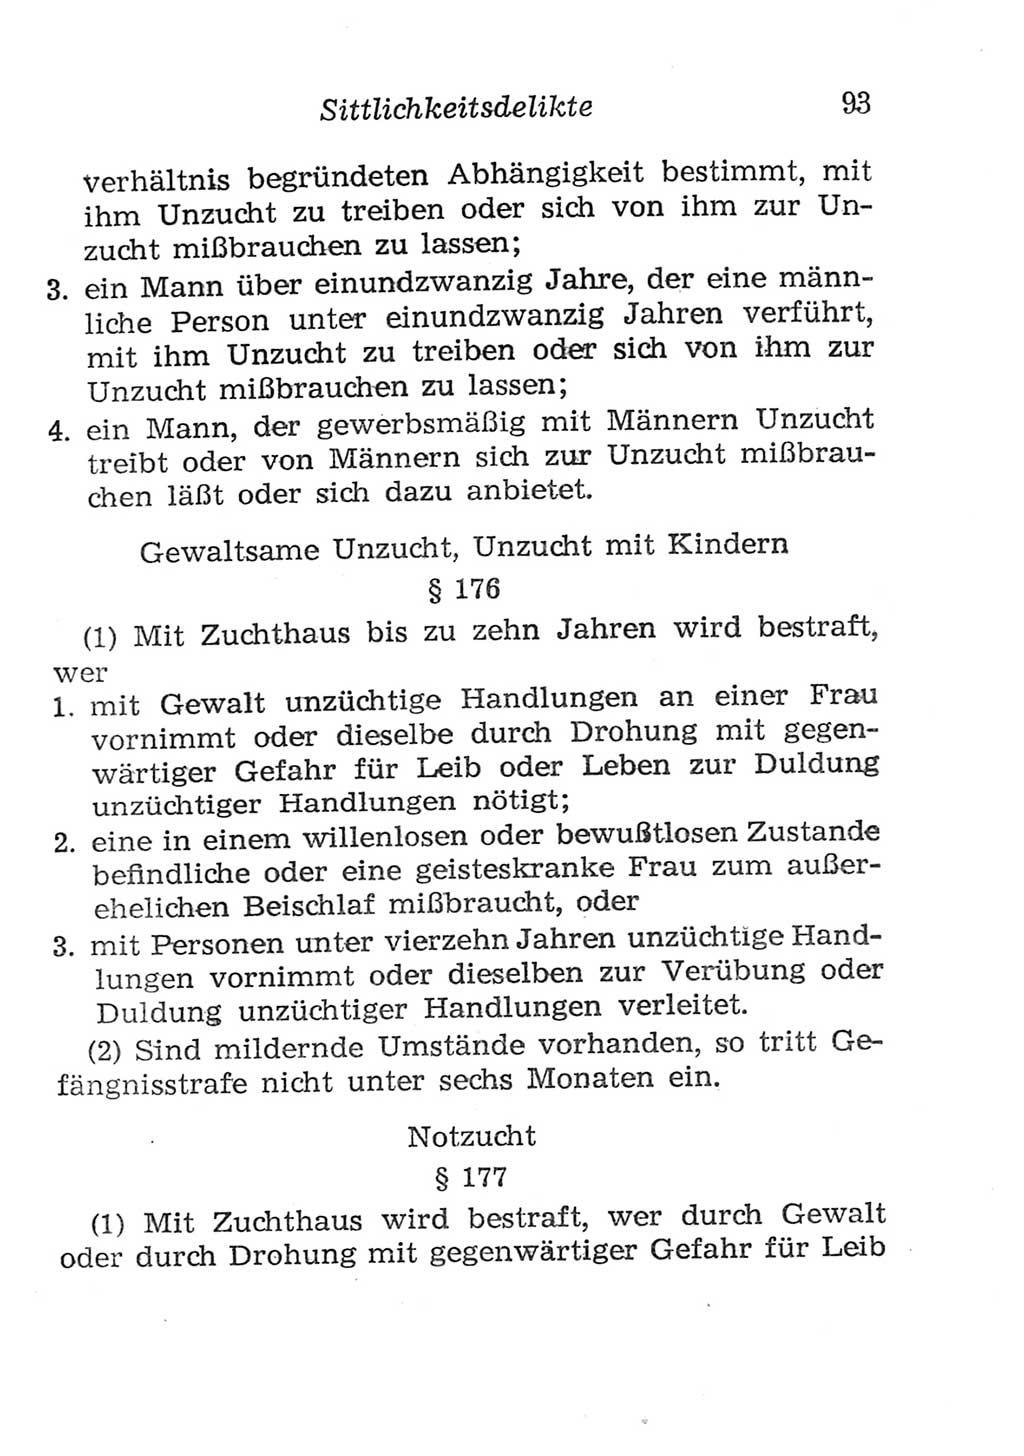 Strafgesetzbuch (StGB) und andere Strafgesetze [Deutsche Demokratische Republik (DDR)] 1957, Seite 93 (StGB Strafges. DDR 1957, S. 93)